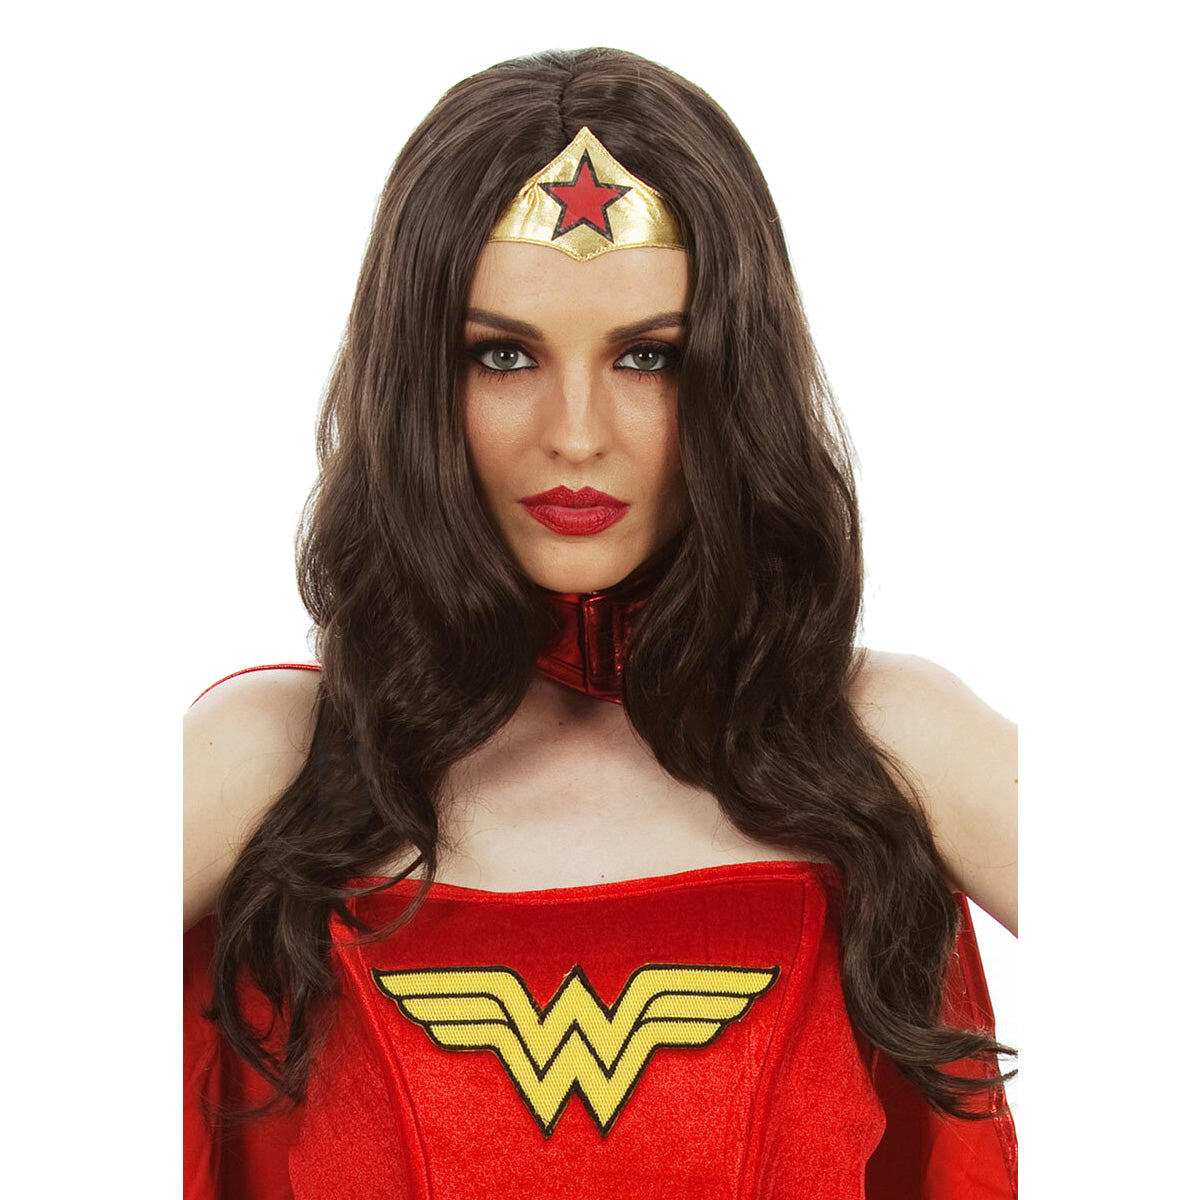 Long brown Wonder Woman wig